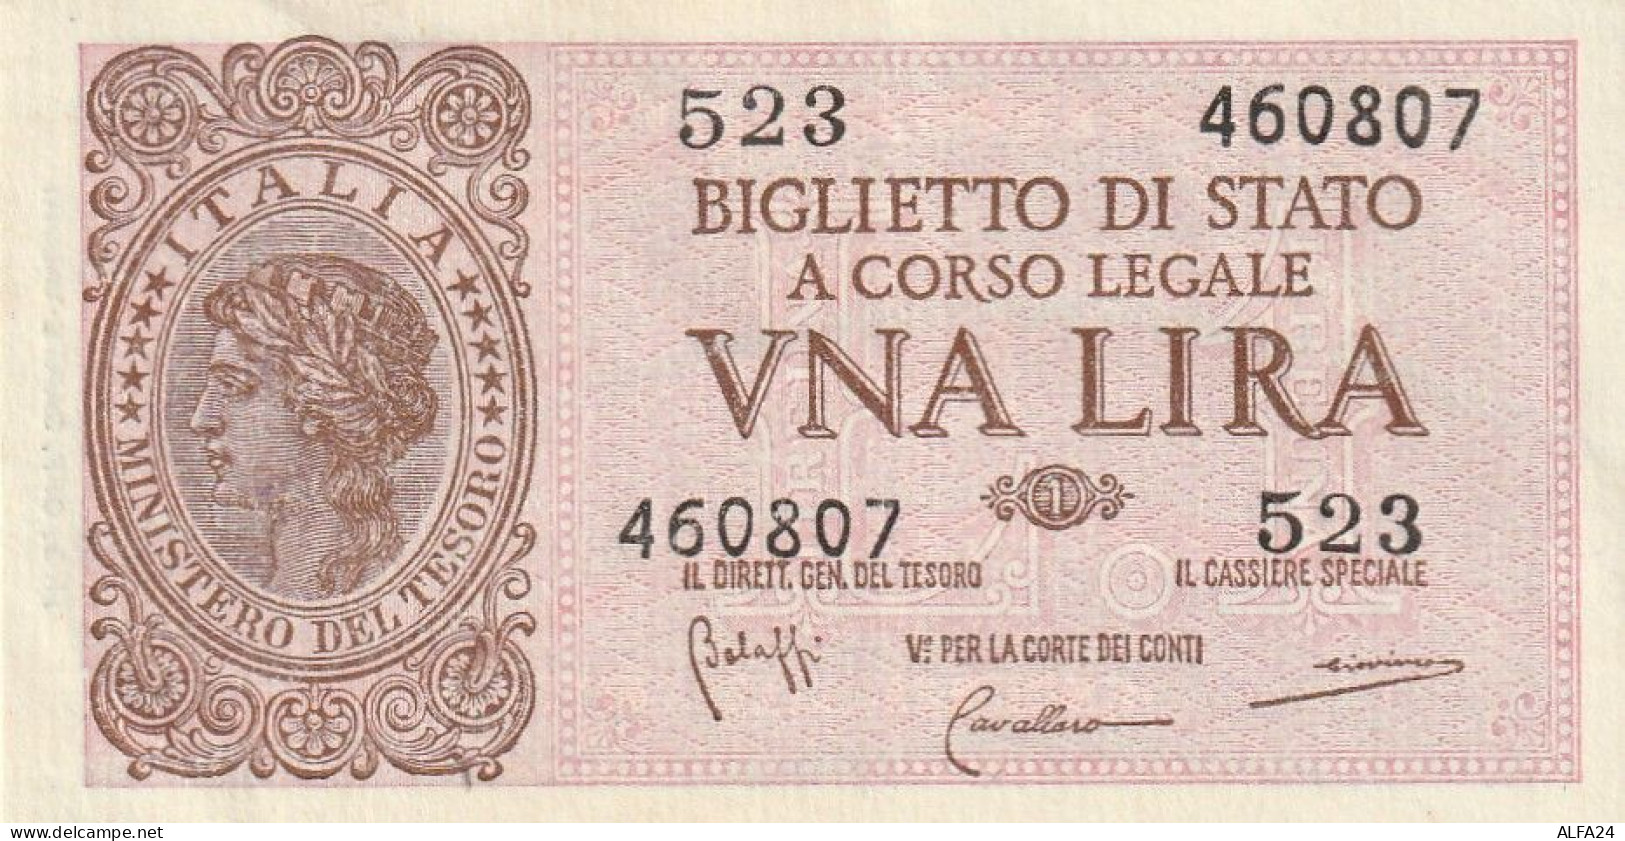 BANCONOTA BIGLIETTO DI STATO ITALIA 1 LIRA EF  (B_367 - Italië – 1 Lira